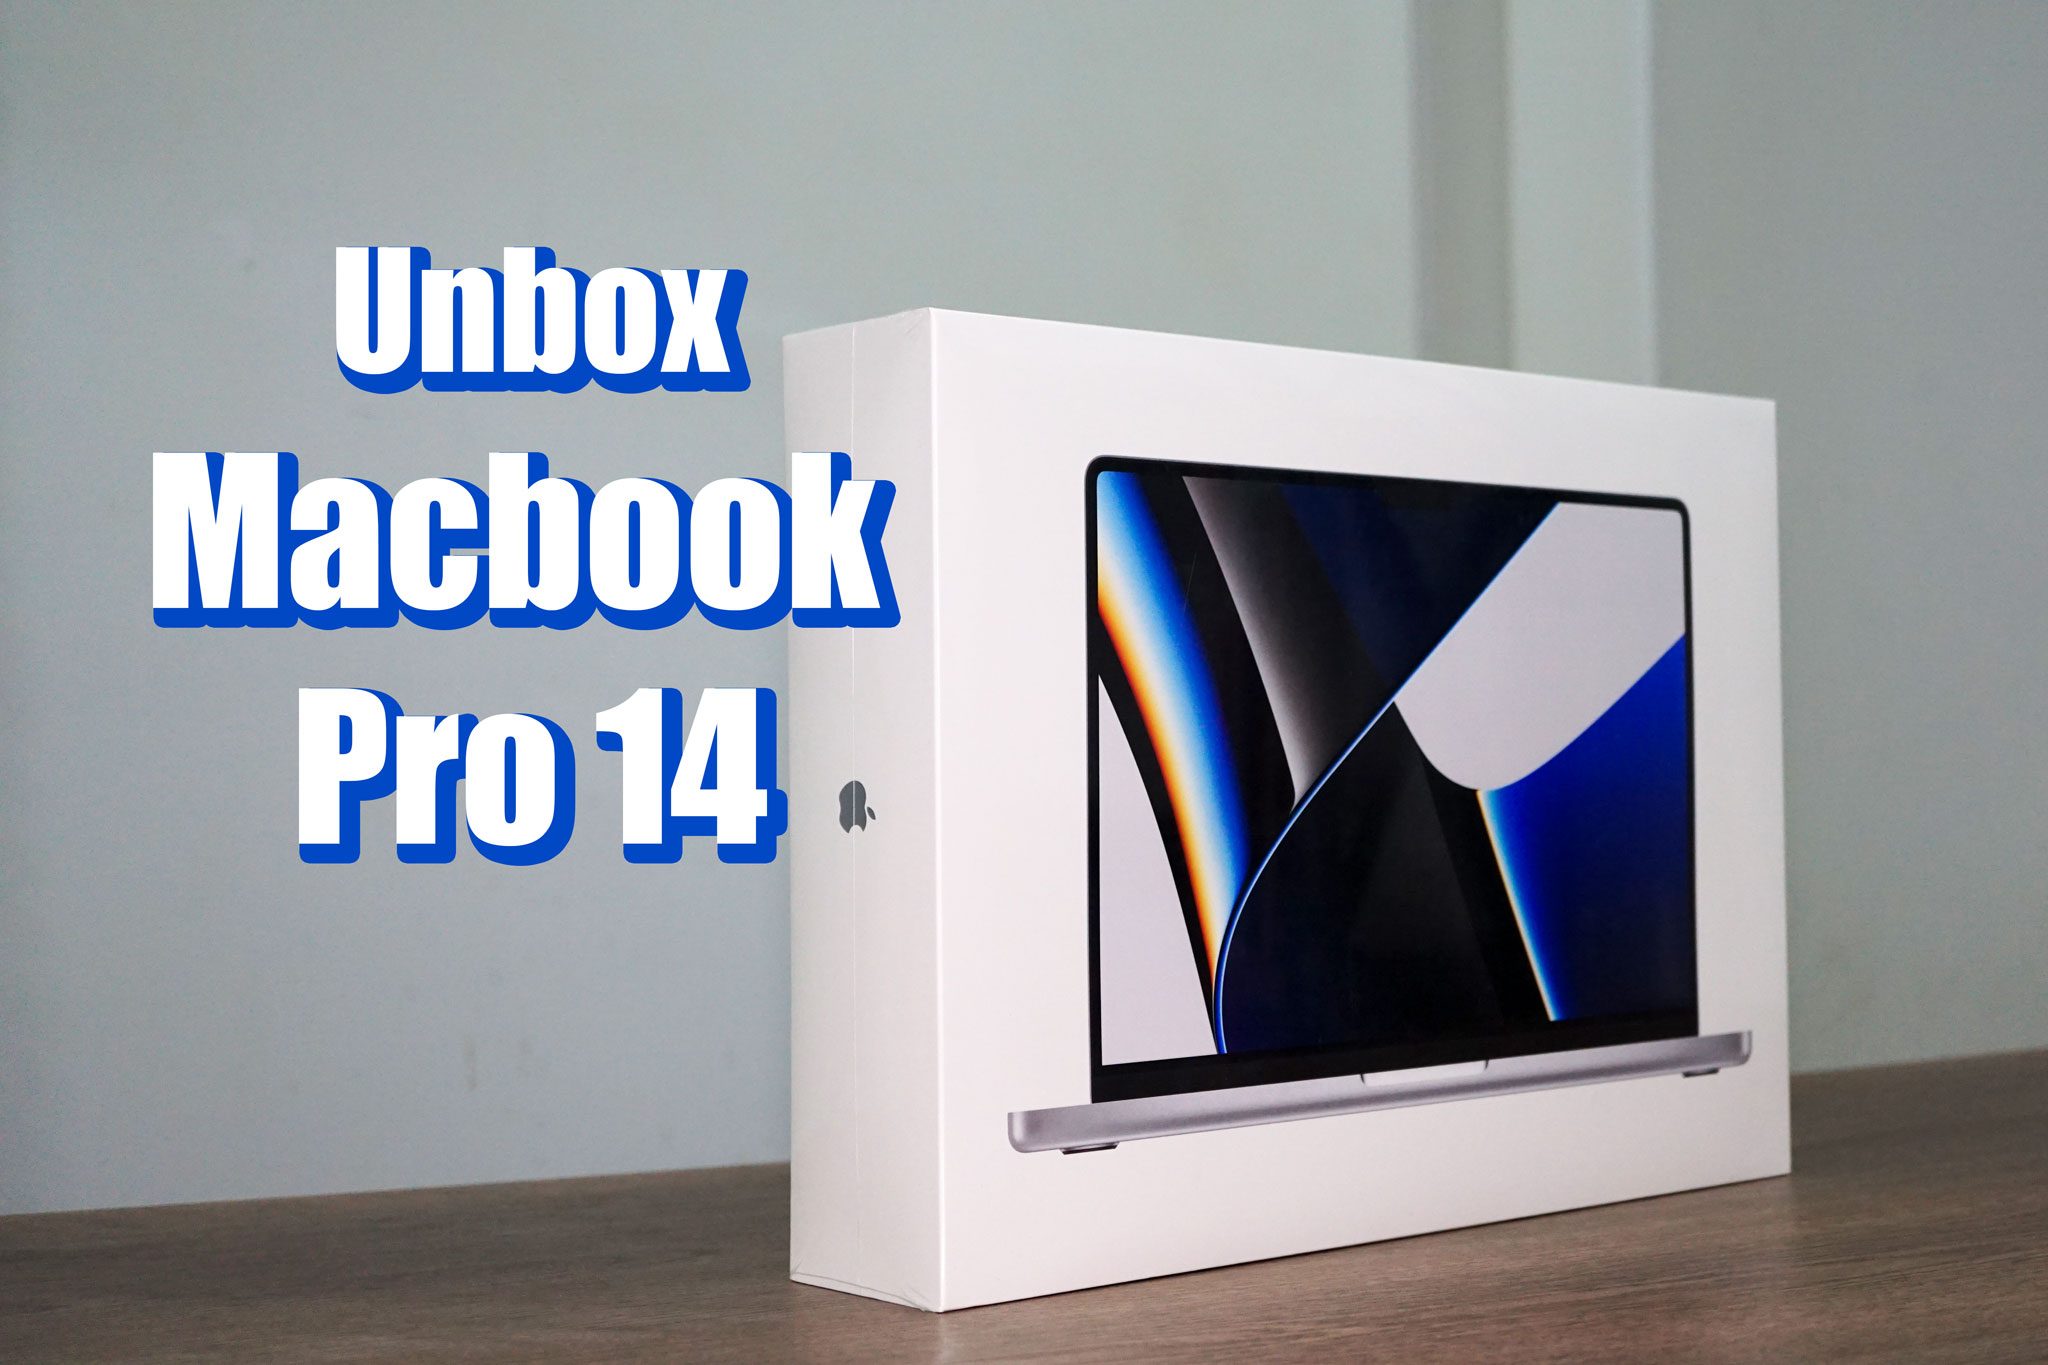 (Video) Mở hộp MacBook Pro 14 chính hãng